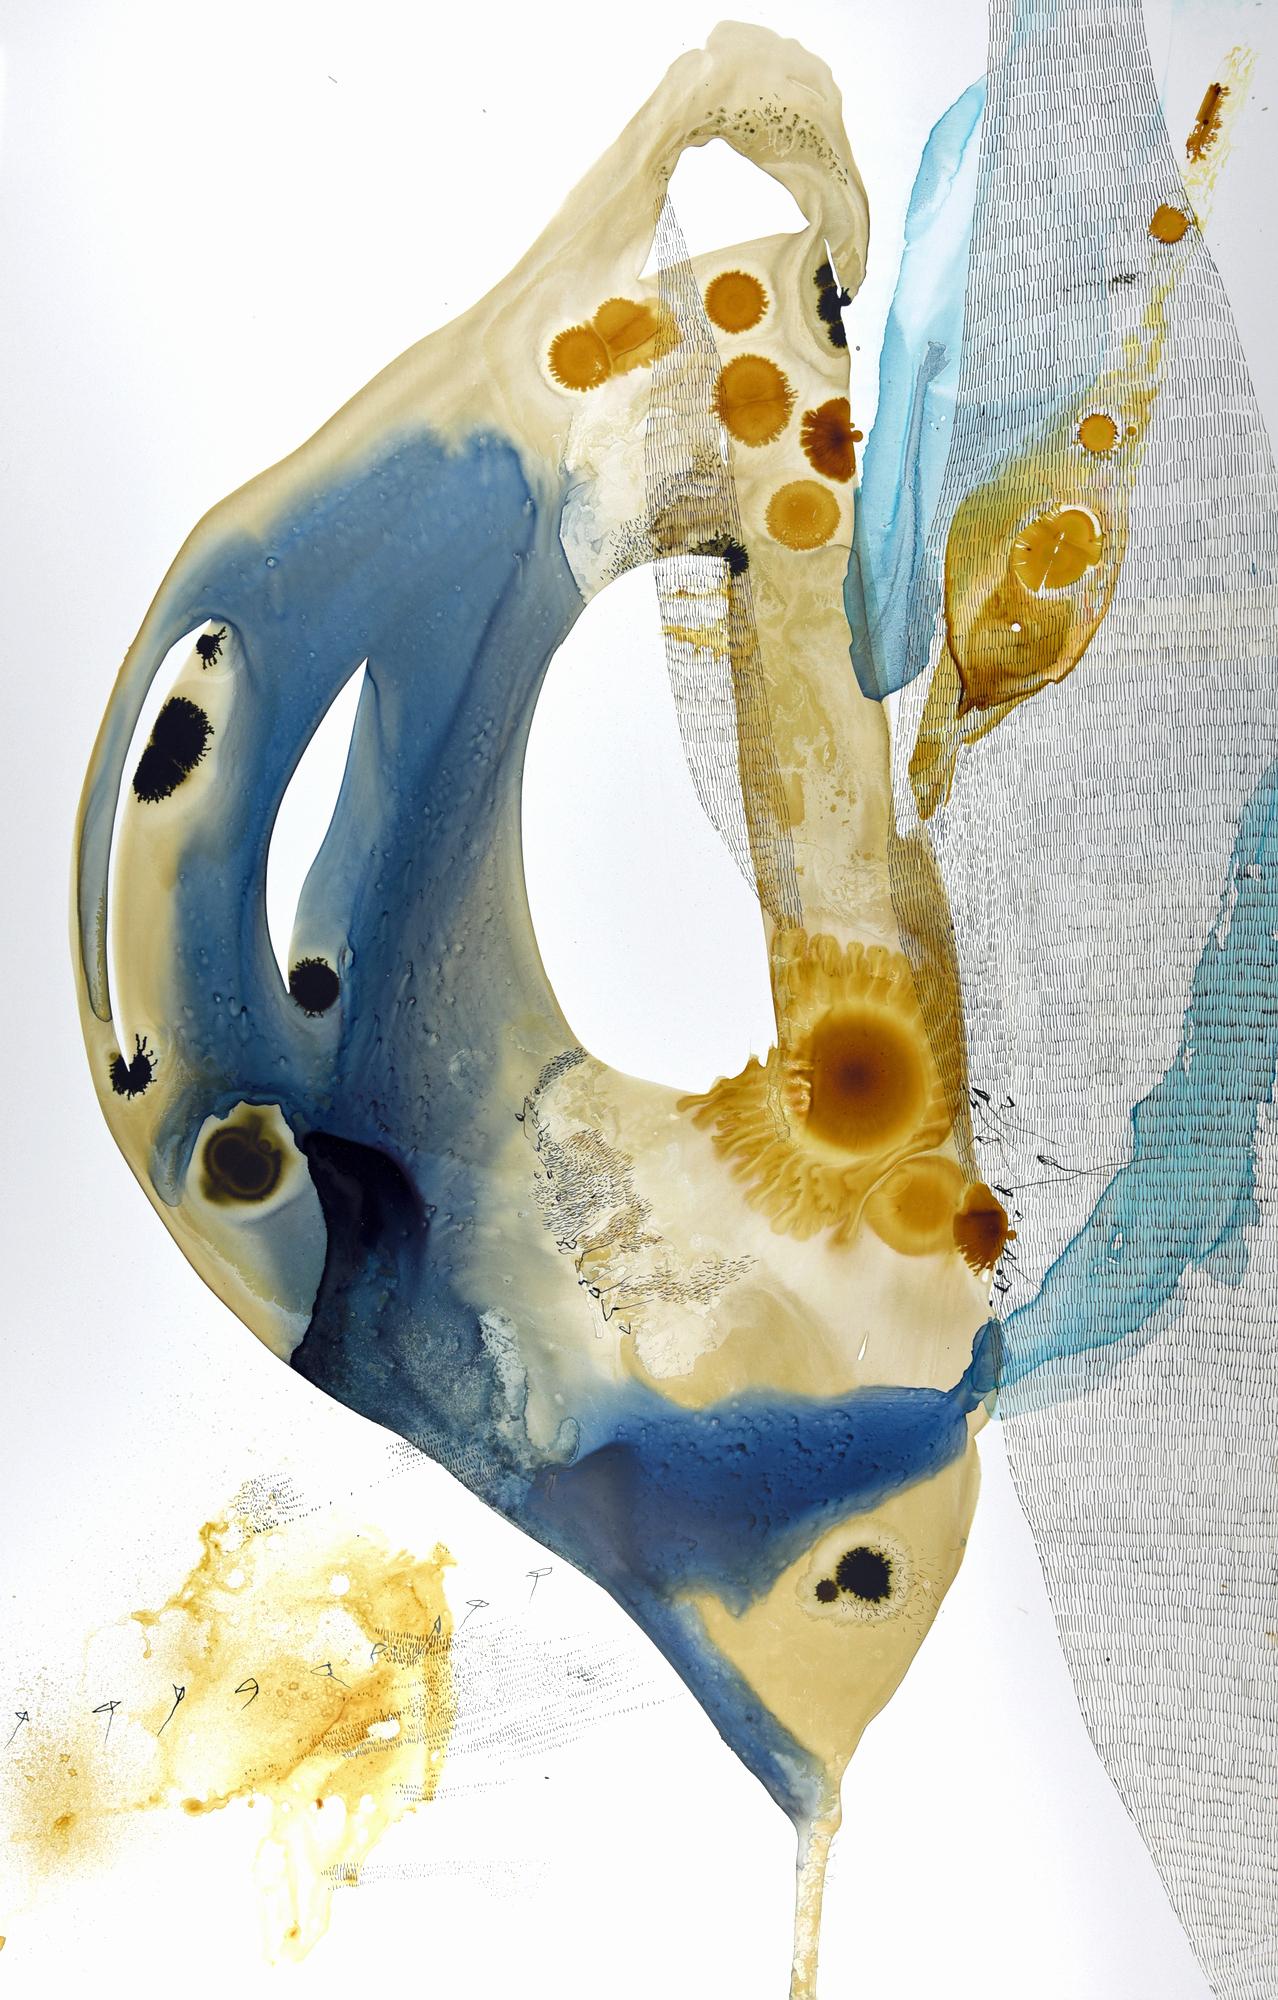 Ana Zanic
Ursprung Wässrig (W-2022-3-1), 2022
Aquarell auf Yupo-Papier
40 x 26 Zoll.
(zan251)

Dieses zeitgenössische abstrakte Aquarell zeigt große, gestische Pinselstriche in blauer, blaugrüner, grauer und brauner Farbe in aquatischen, organischen